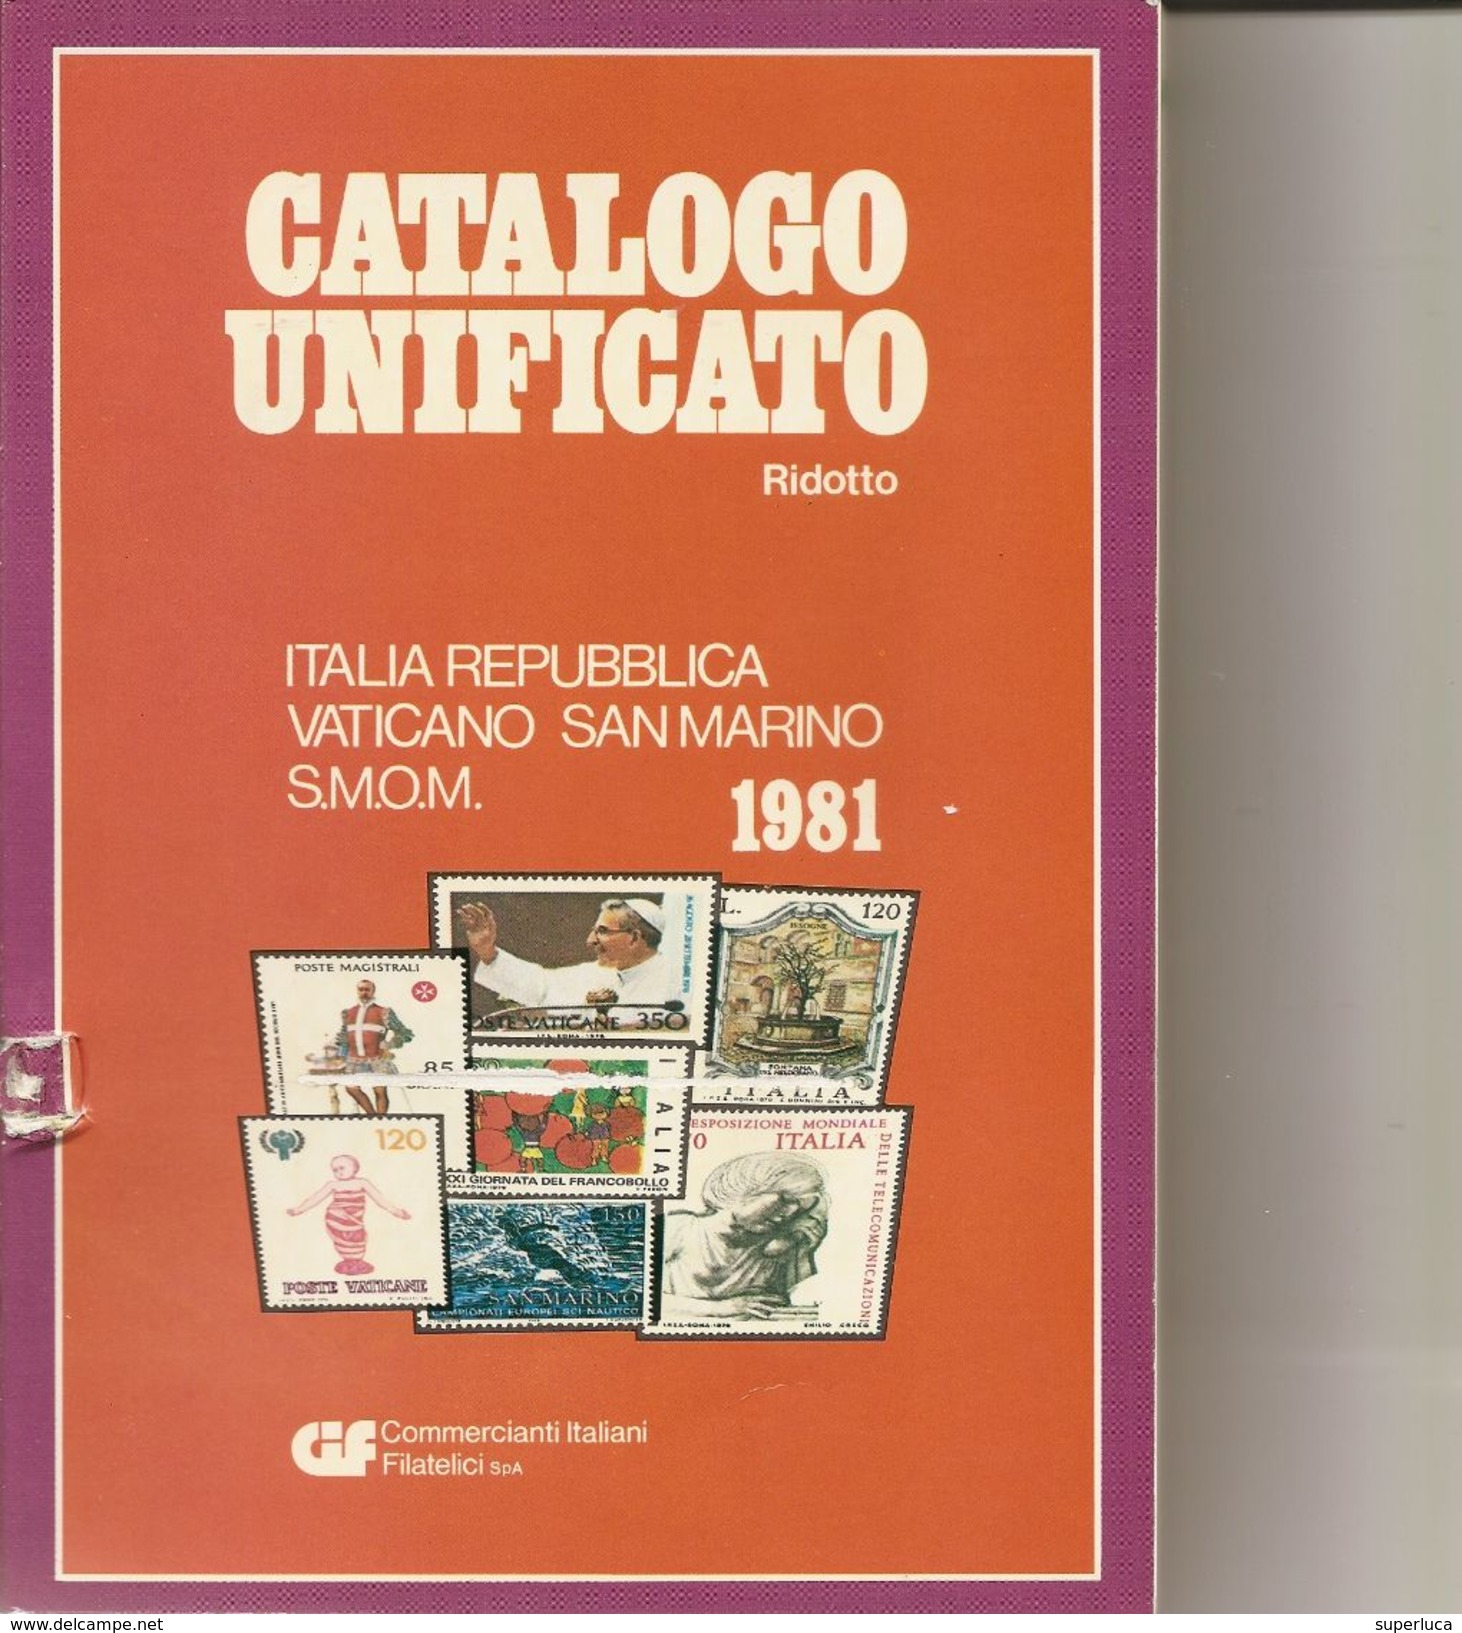 2-CATALOGO BOLAFFI 1967-FRANCOBOLLI ITALIANI+CATALOGO UNIFICATORIDOTTO 1981(OMAGGIO) - Italy